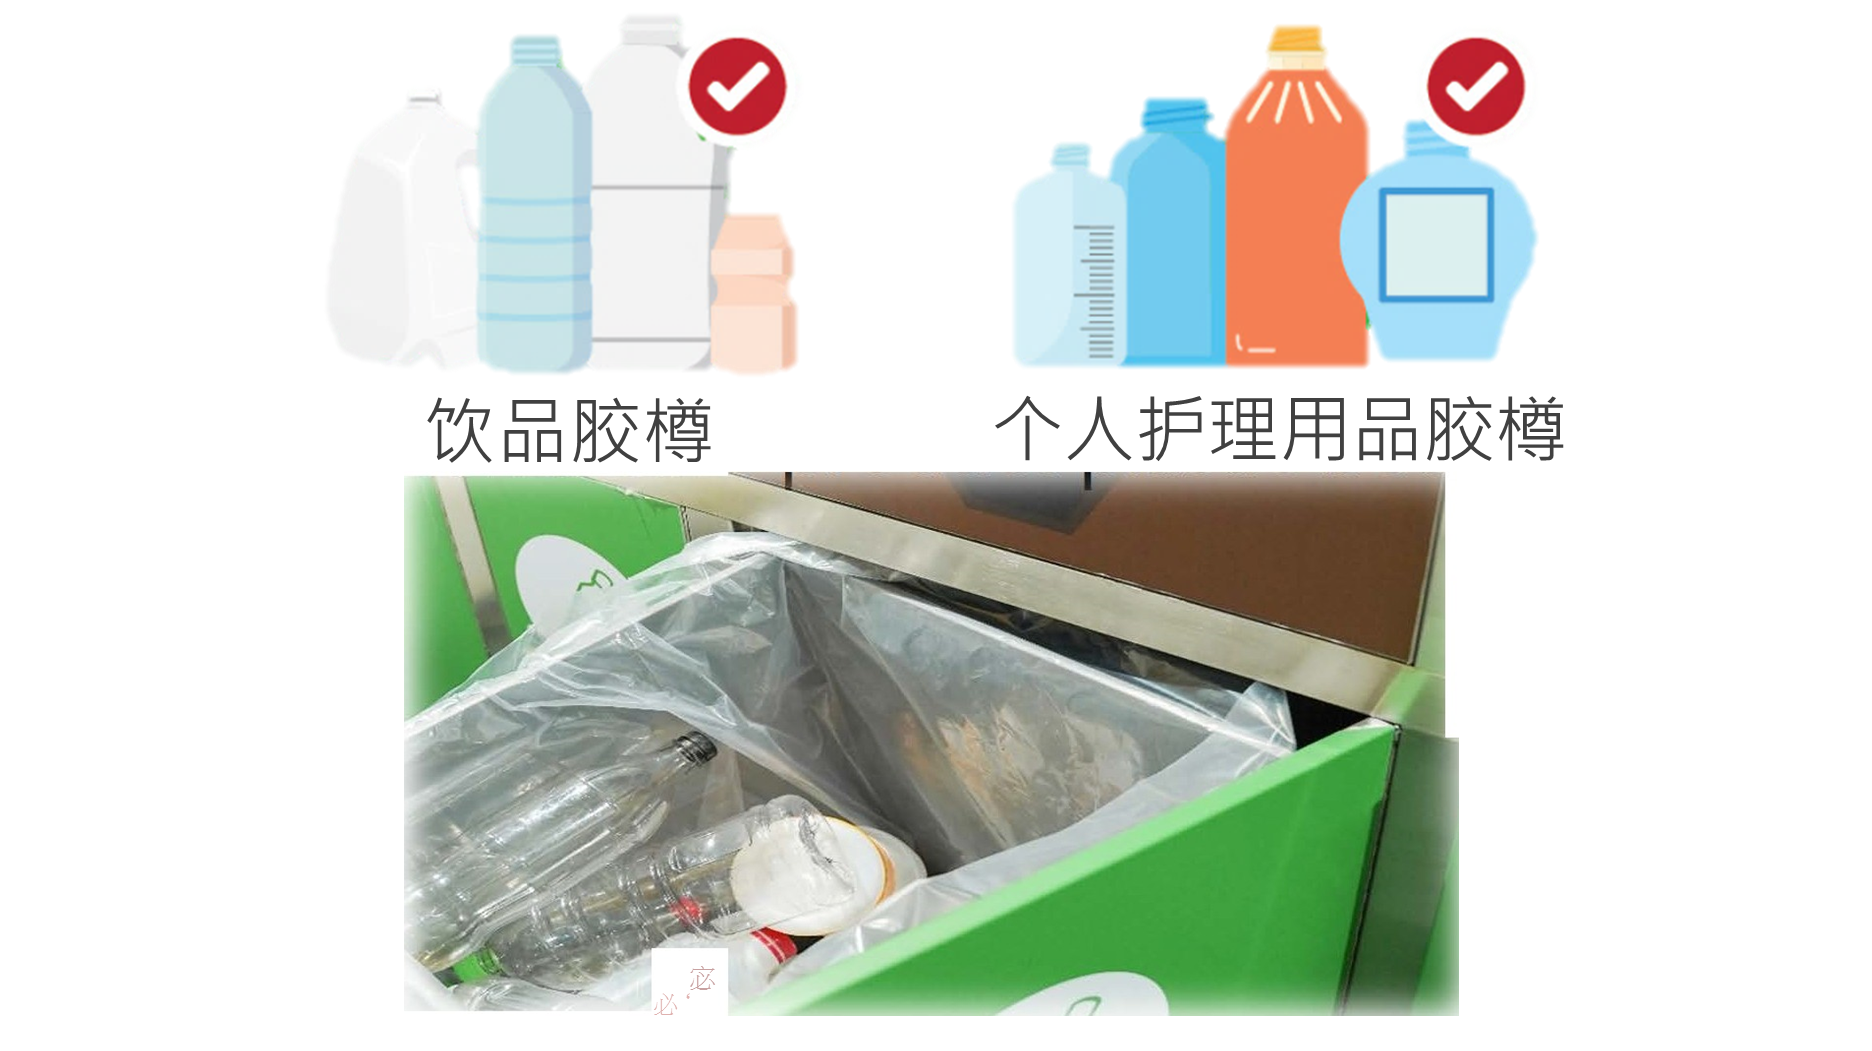 相片显示干净回收饮品胶樽,个人护理用品胶樽的贴士 - 除樽盖,去招纸,冲干净